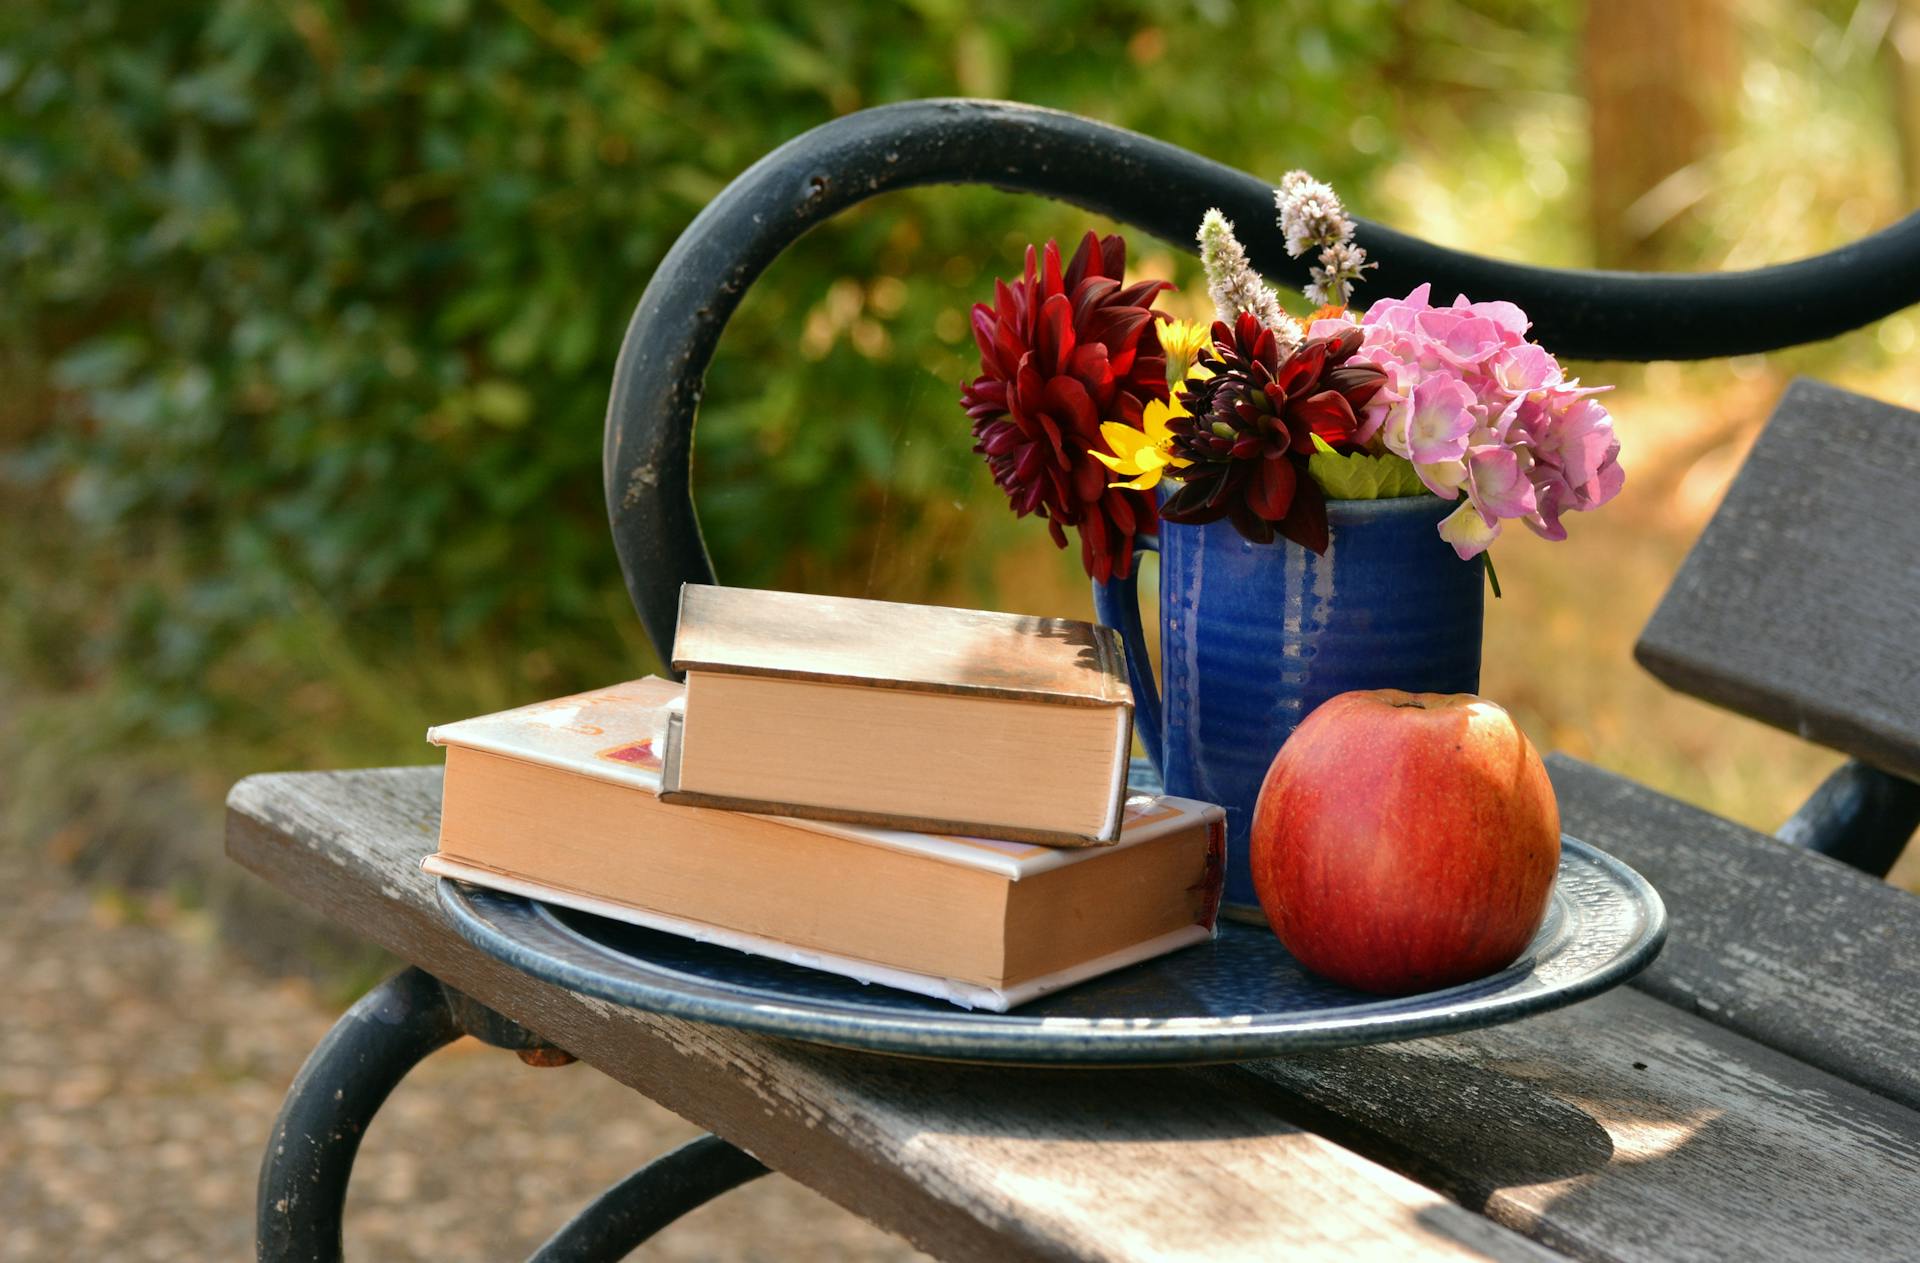 Deux livres placés l'un sur l'autre à côté d'un vase à fleurs et d'une pomme rouge | Source : Pexels